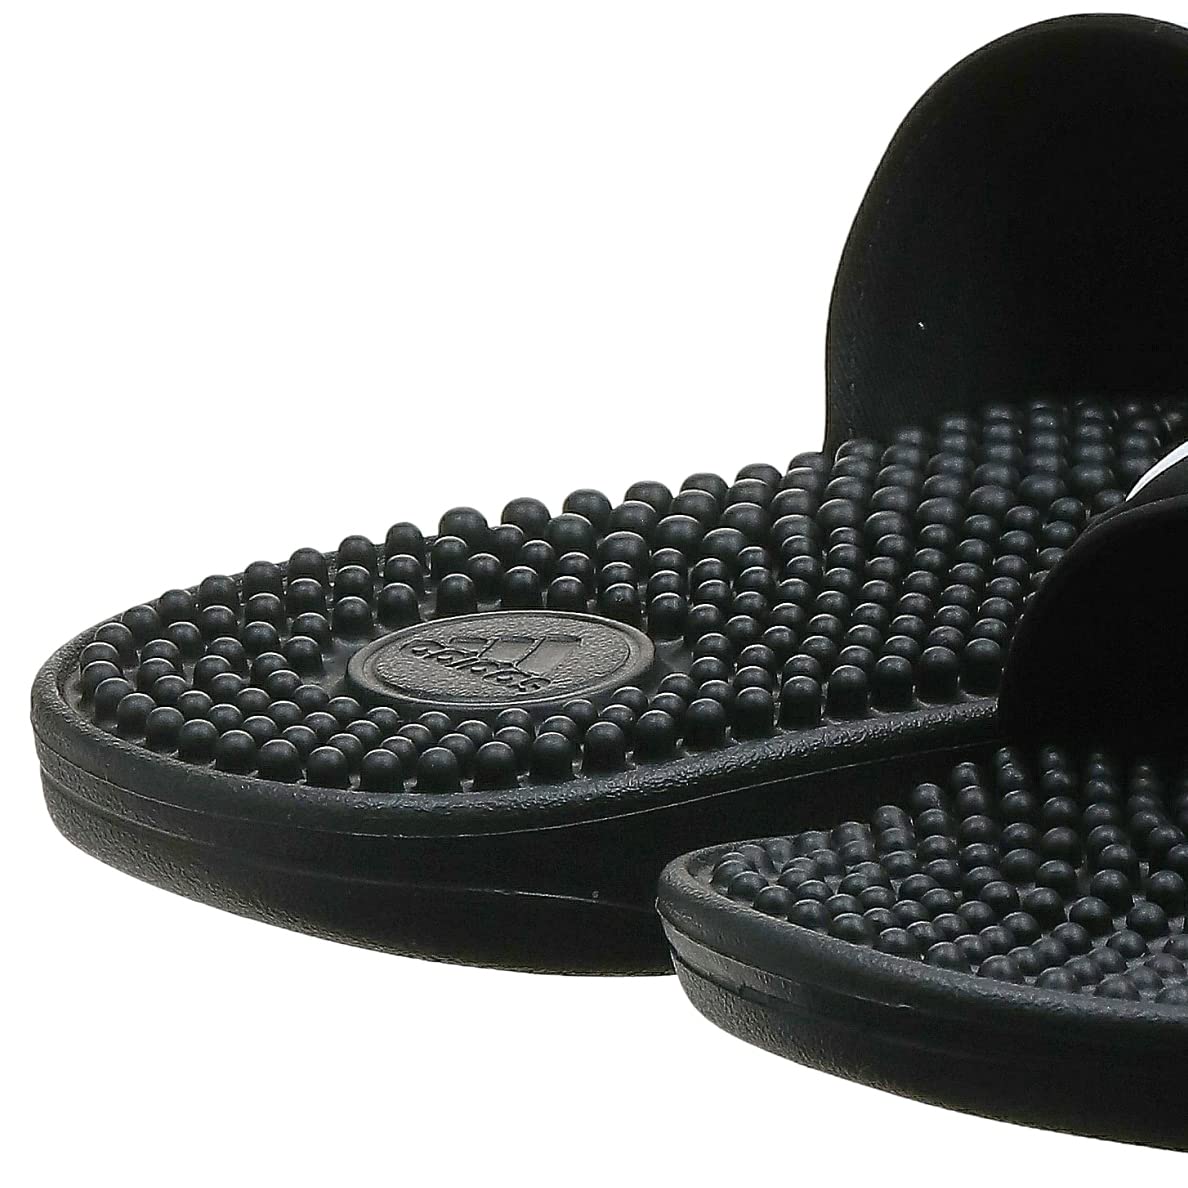 adidas Unisex-Adult Adissage Slides Sandal